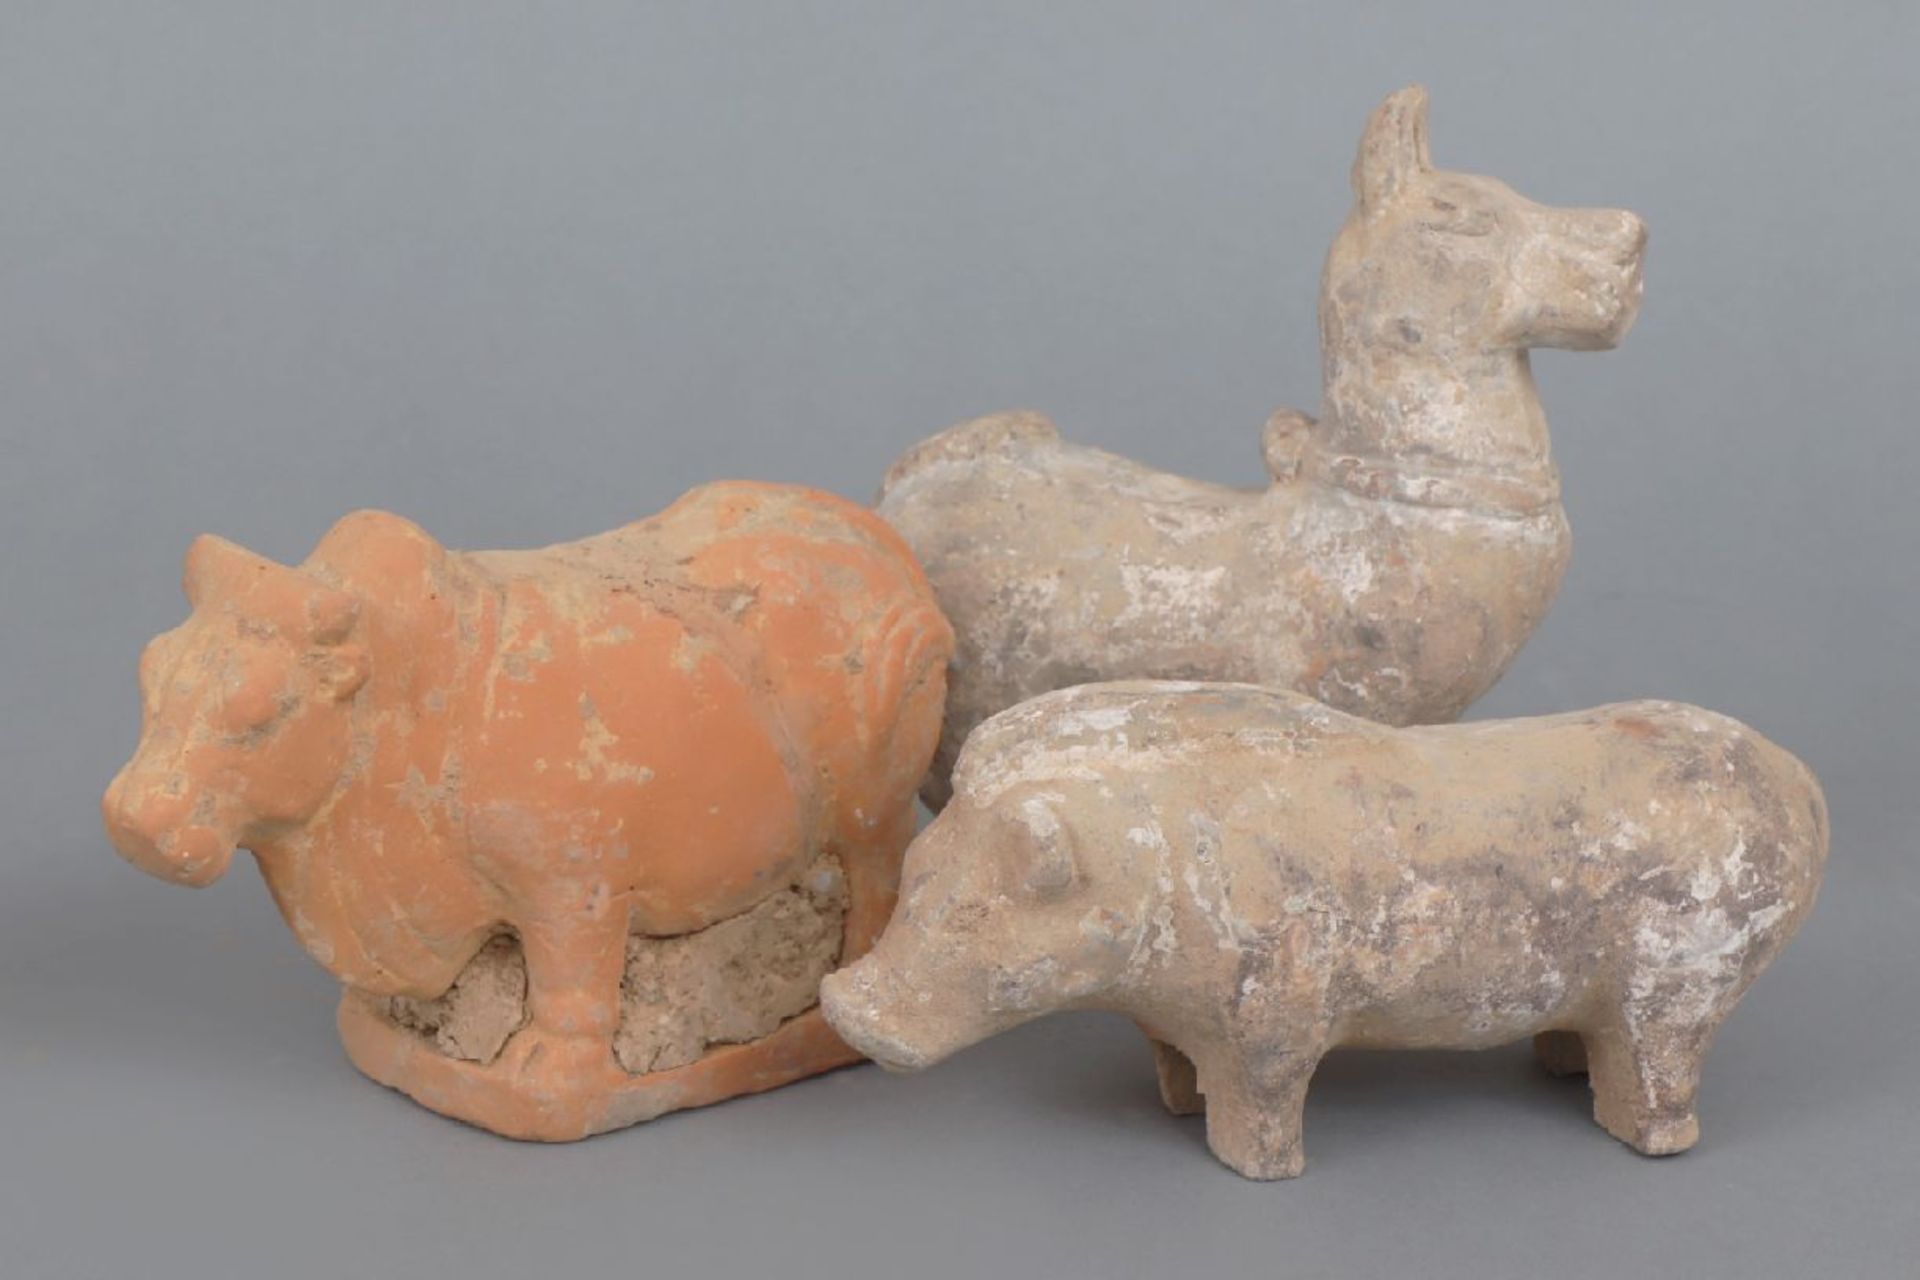 3 chinesische Terrakotta-Tierfigurenwohl HAN-Dynastie (206 v. Chr. bis 220 n. Chr.) oder TANG-